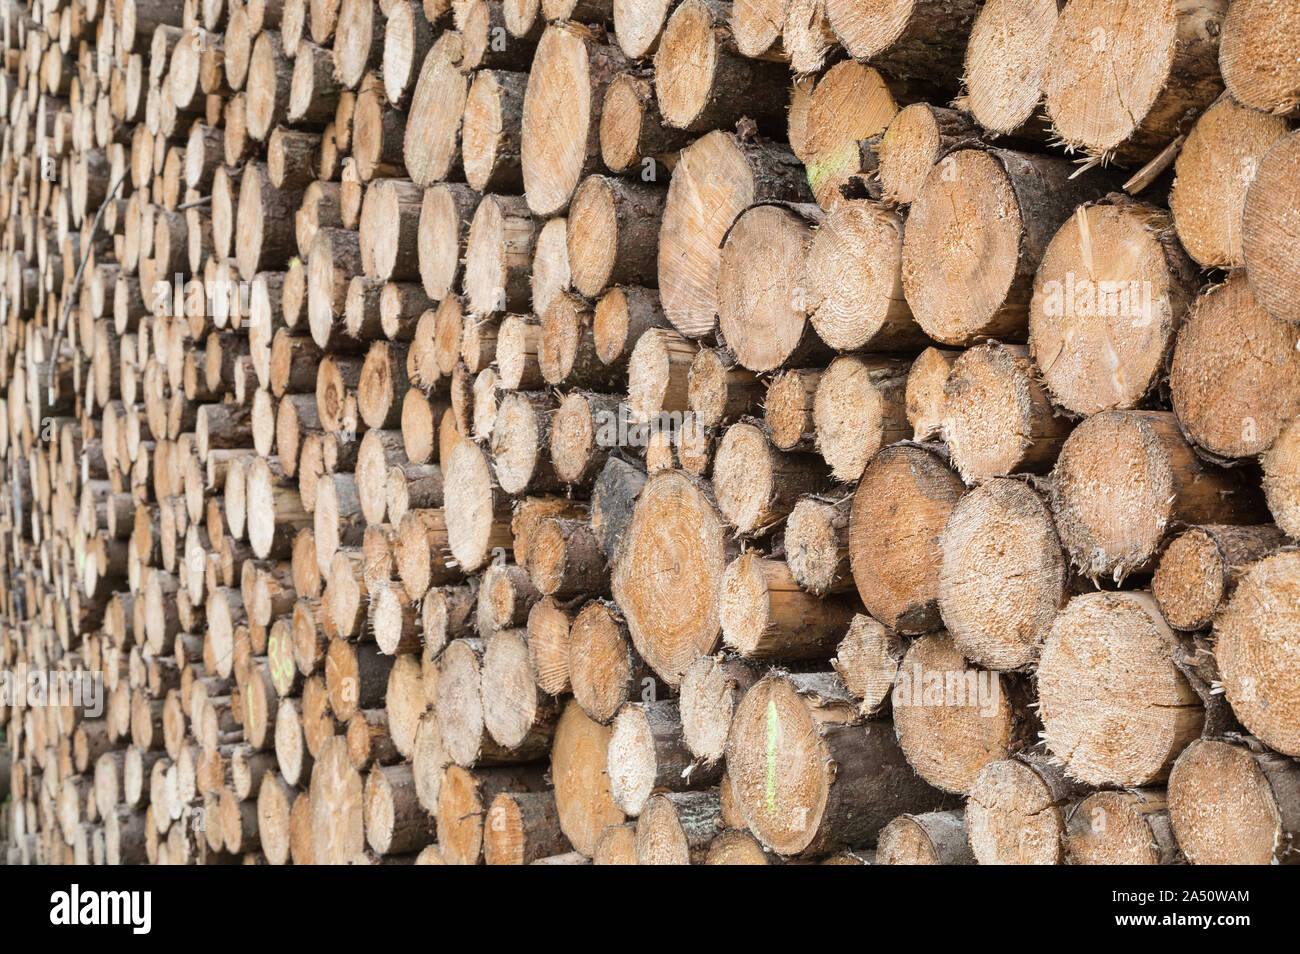 La consistenza di una pila di tronchi di alberi Foto Stock